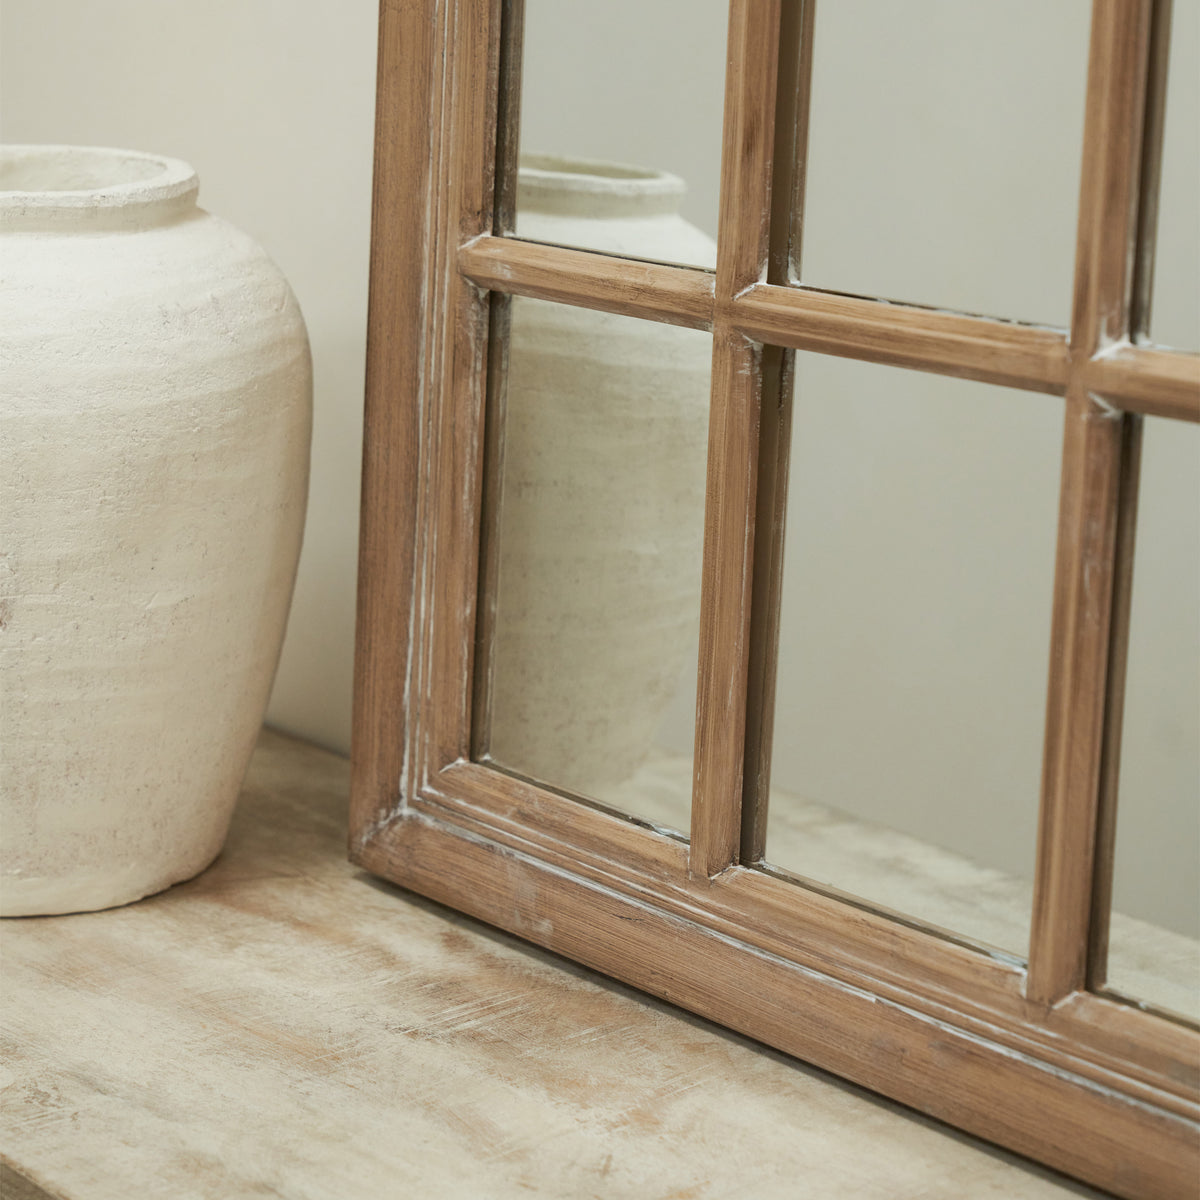 Arabella - Washed Wood Arched Shabby Chic Window Mirror 100cm x 60cm